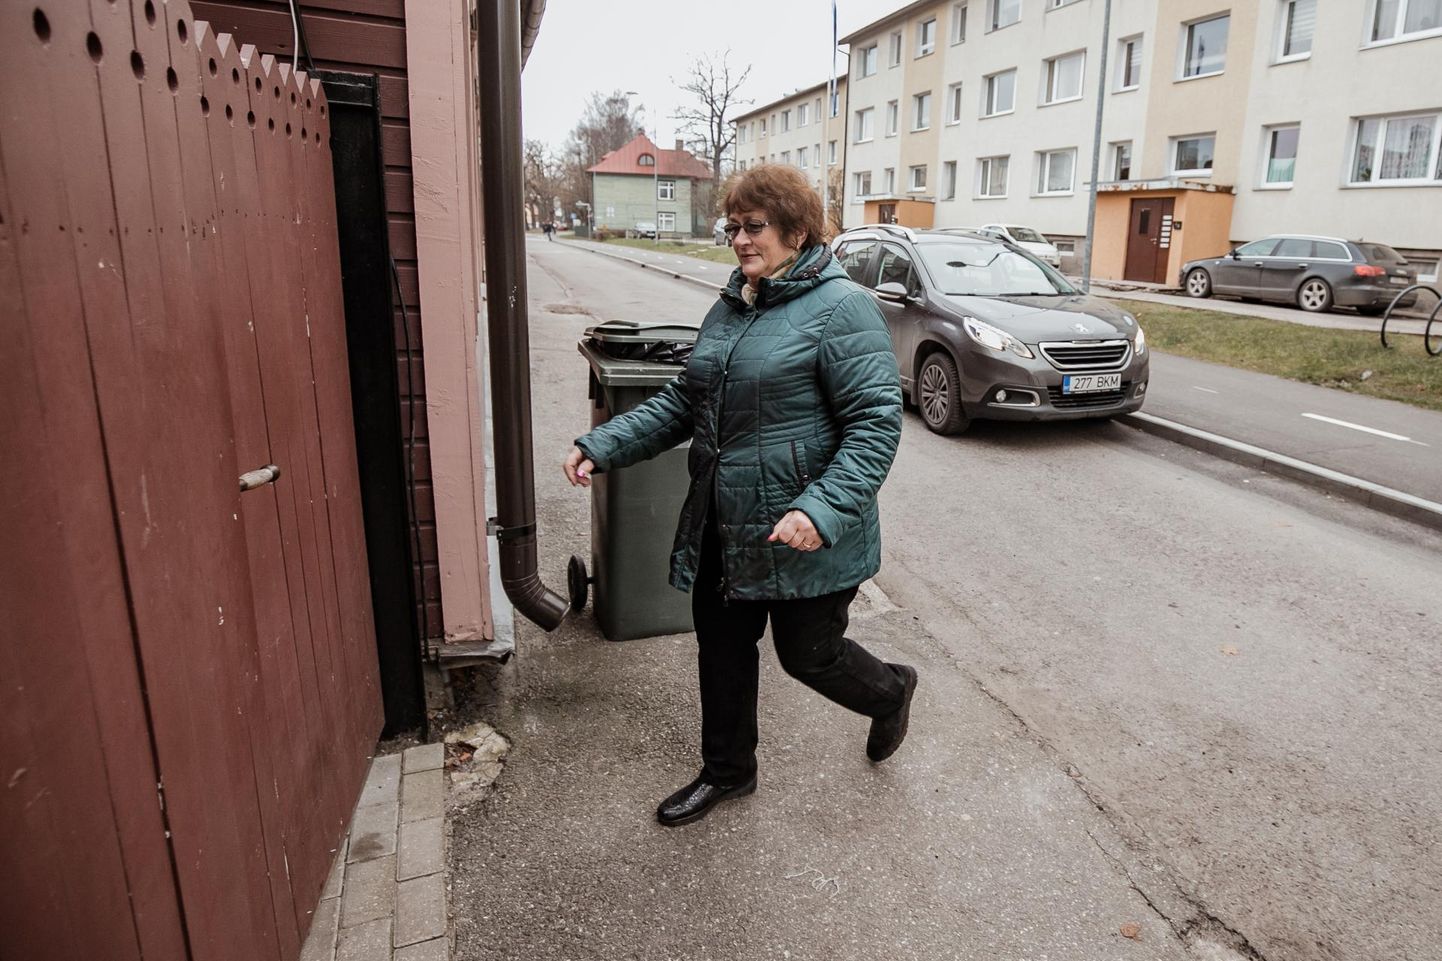 Ainsa vastutulekuna asendas Pärnu linnavalitsus peatumise keelumärgi parkimist keelavaga, et ­Taimi Vahenurm ega tema naabrid liikluseeskirju ei rikuks, kui värava avamiseks auto korraks keset kitsast teed seisma jätavad.